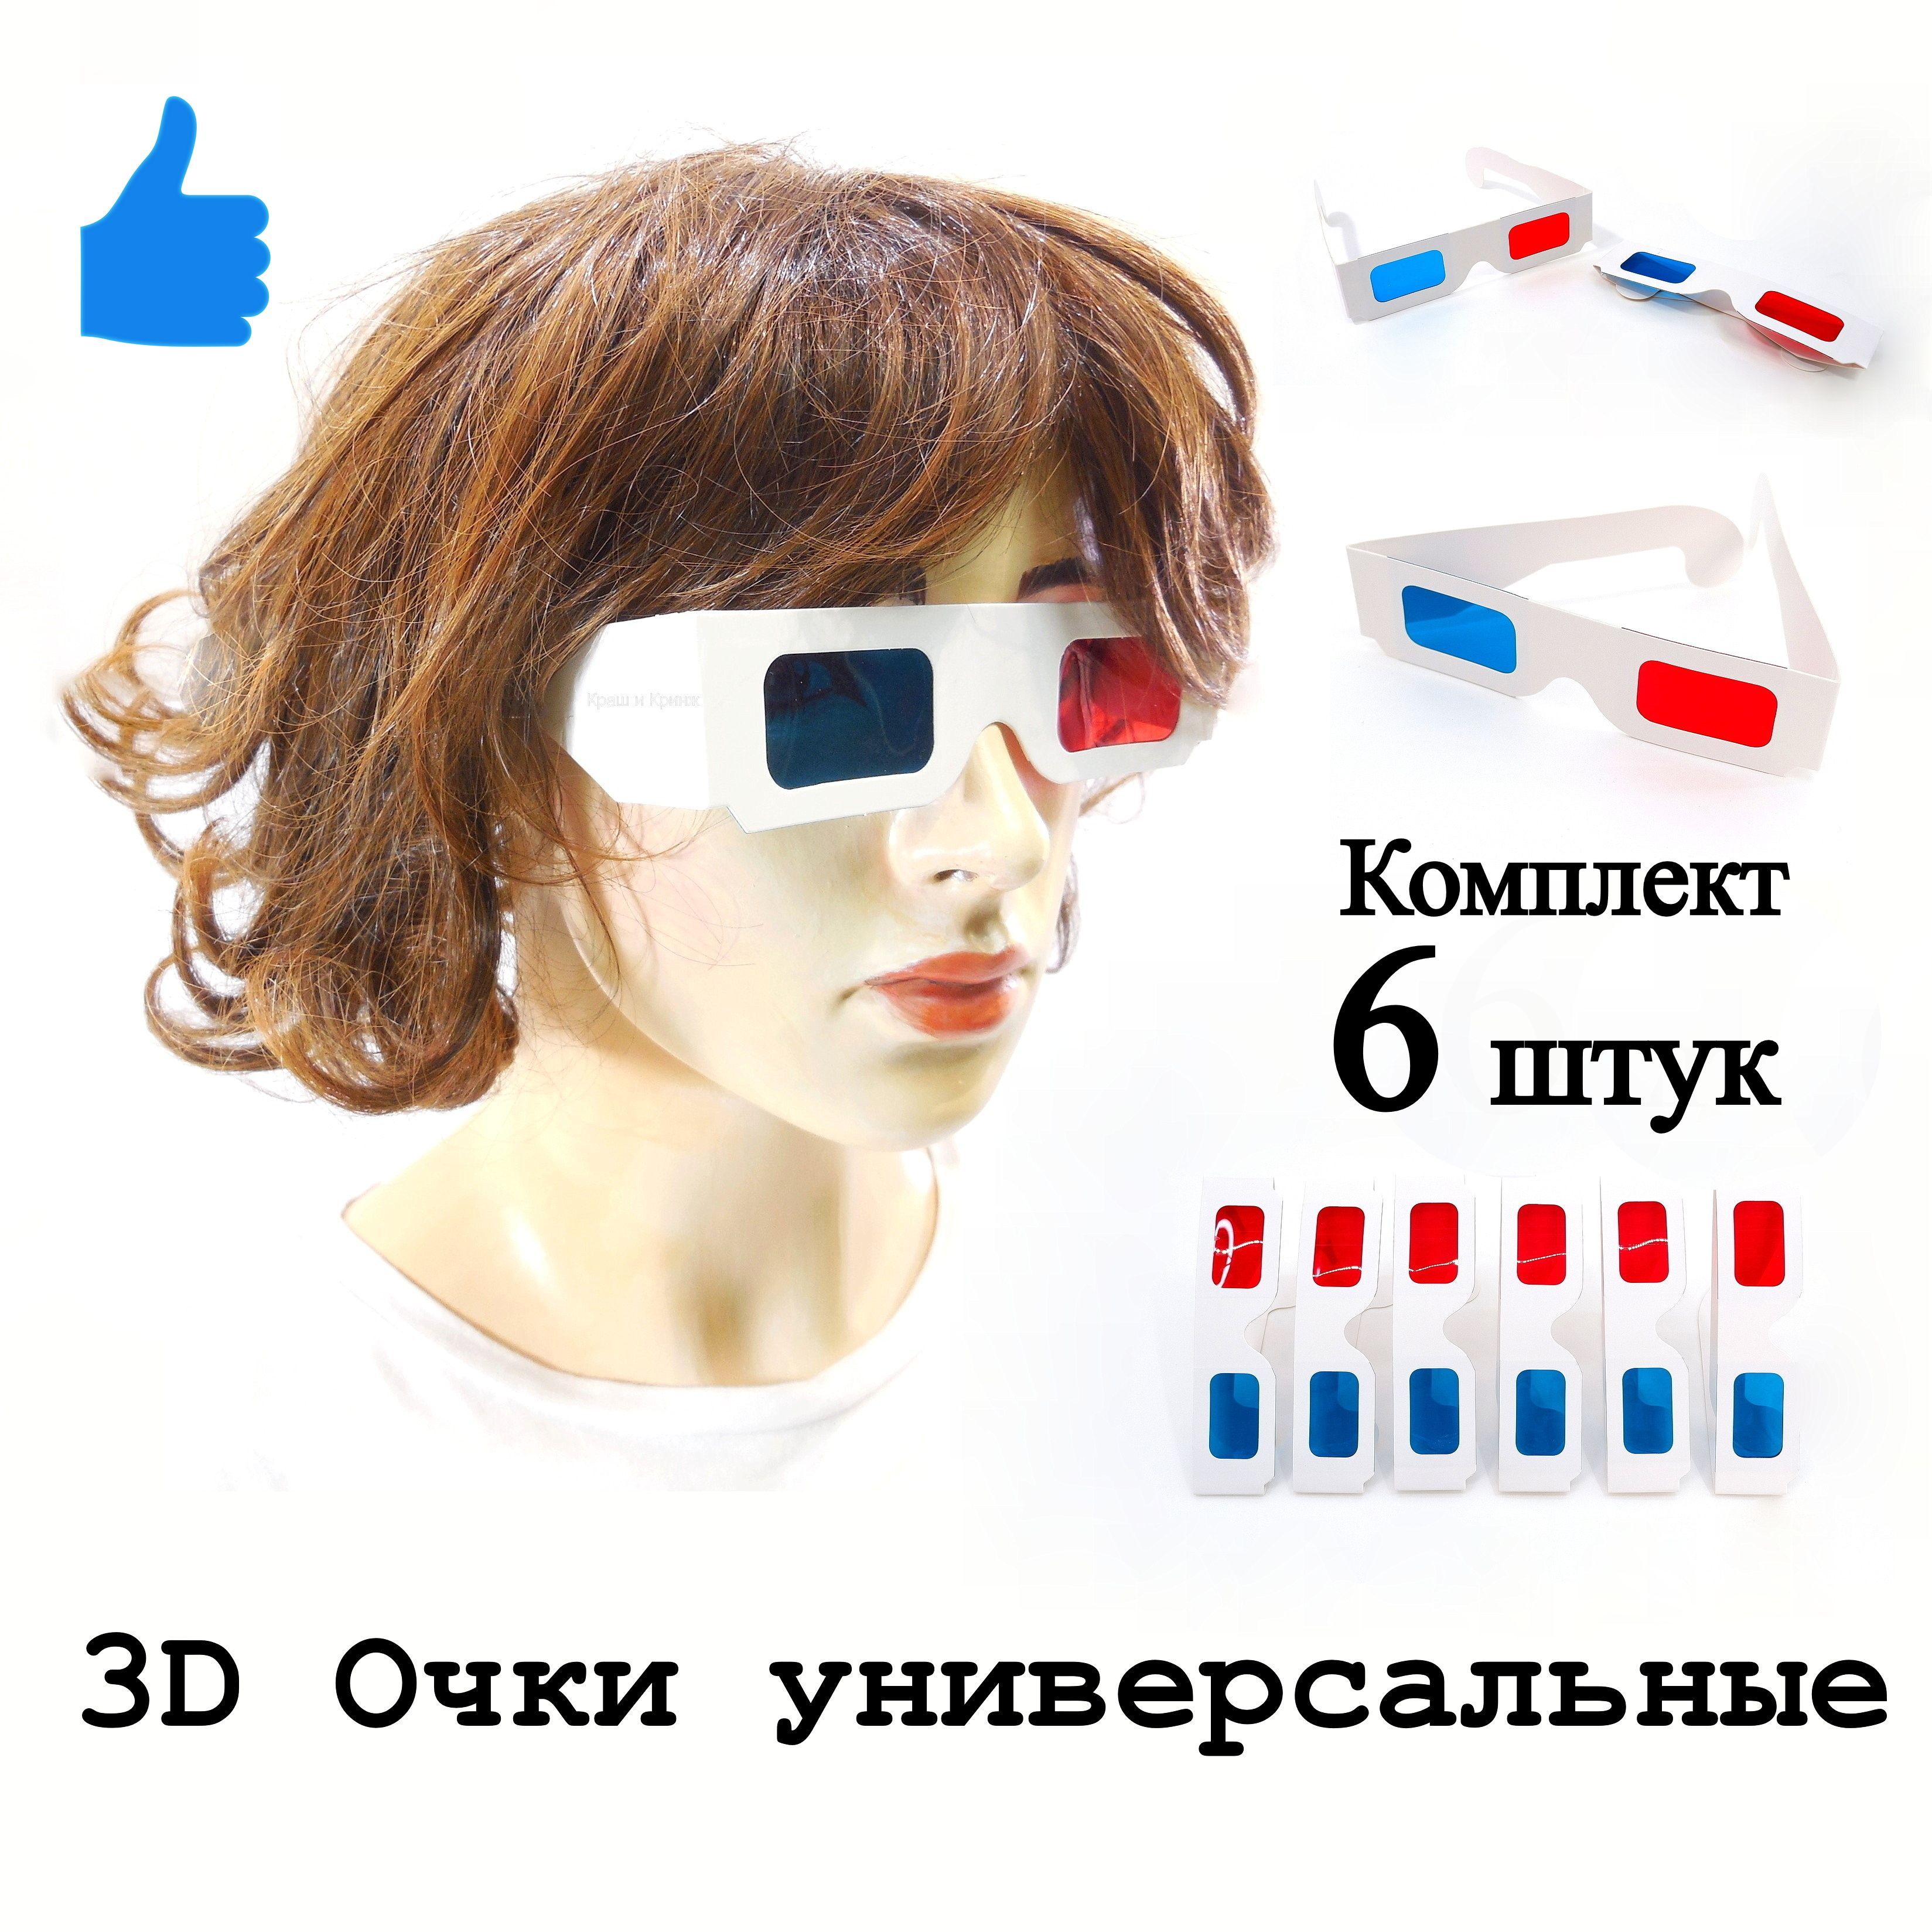 3D очки (анаглифные)